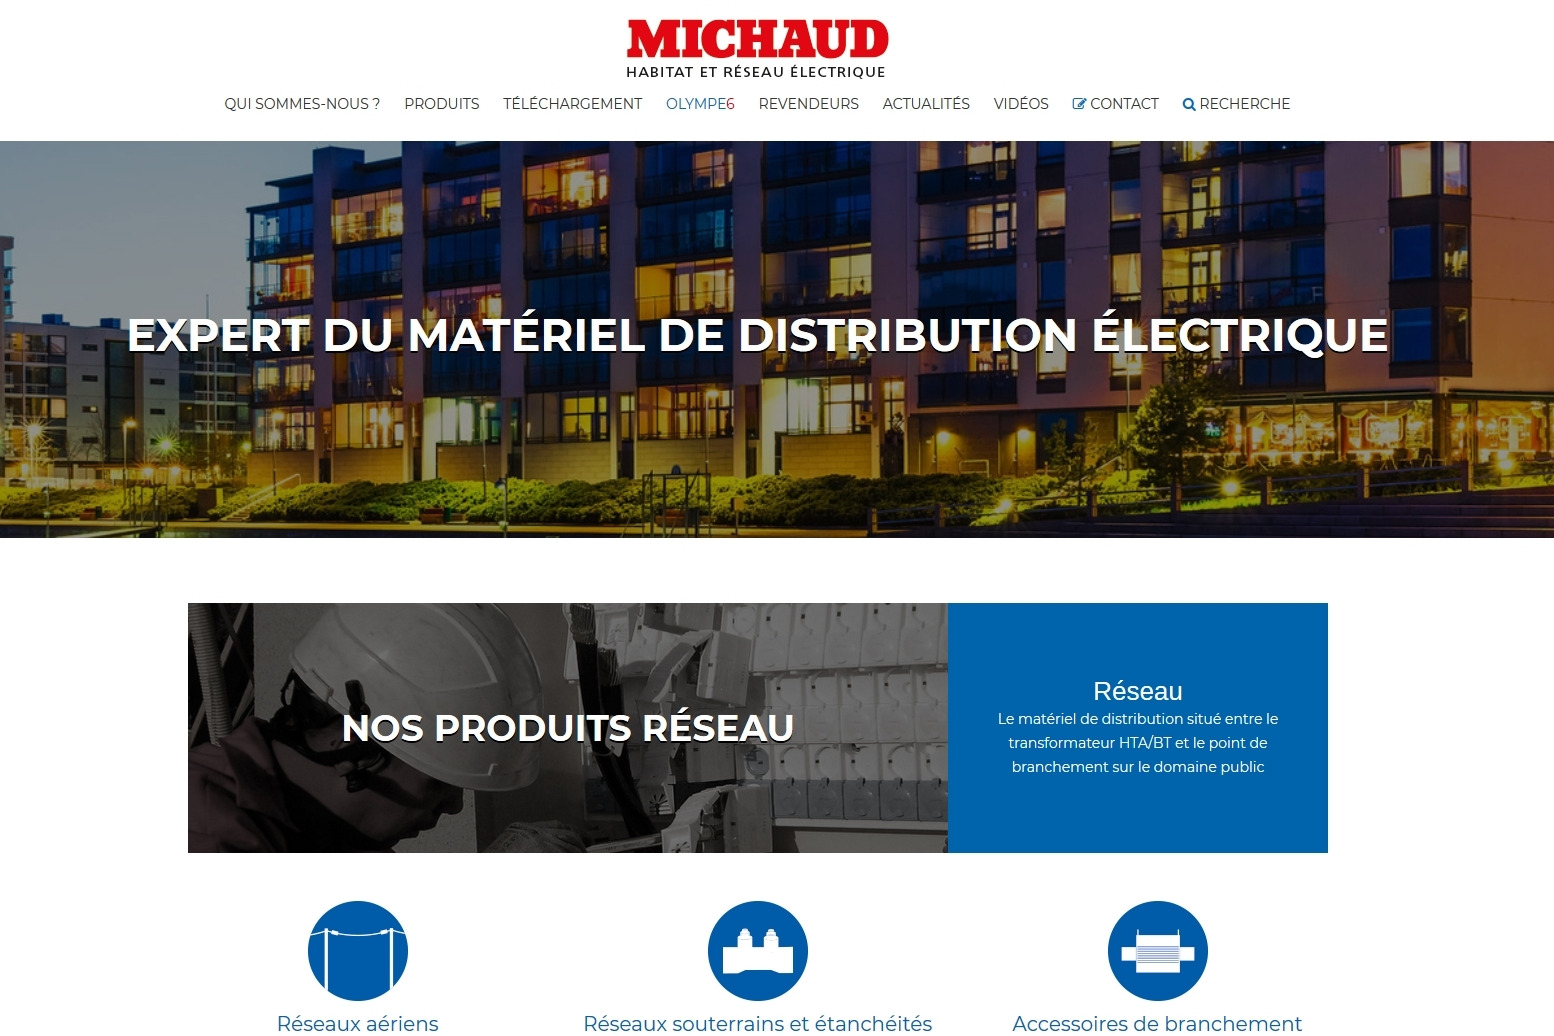 Michaud, Expert du matériel de distribution électrique